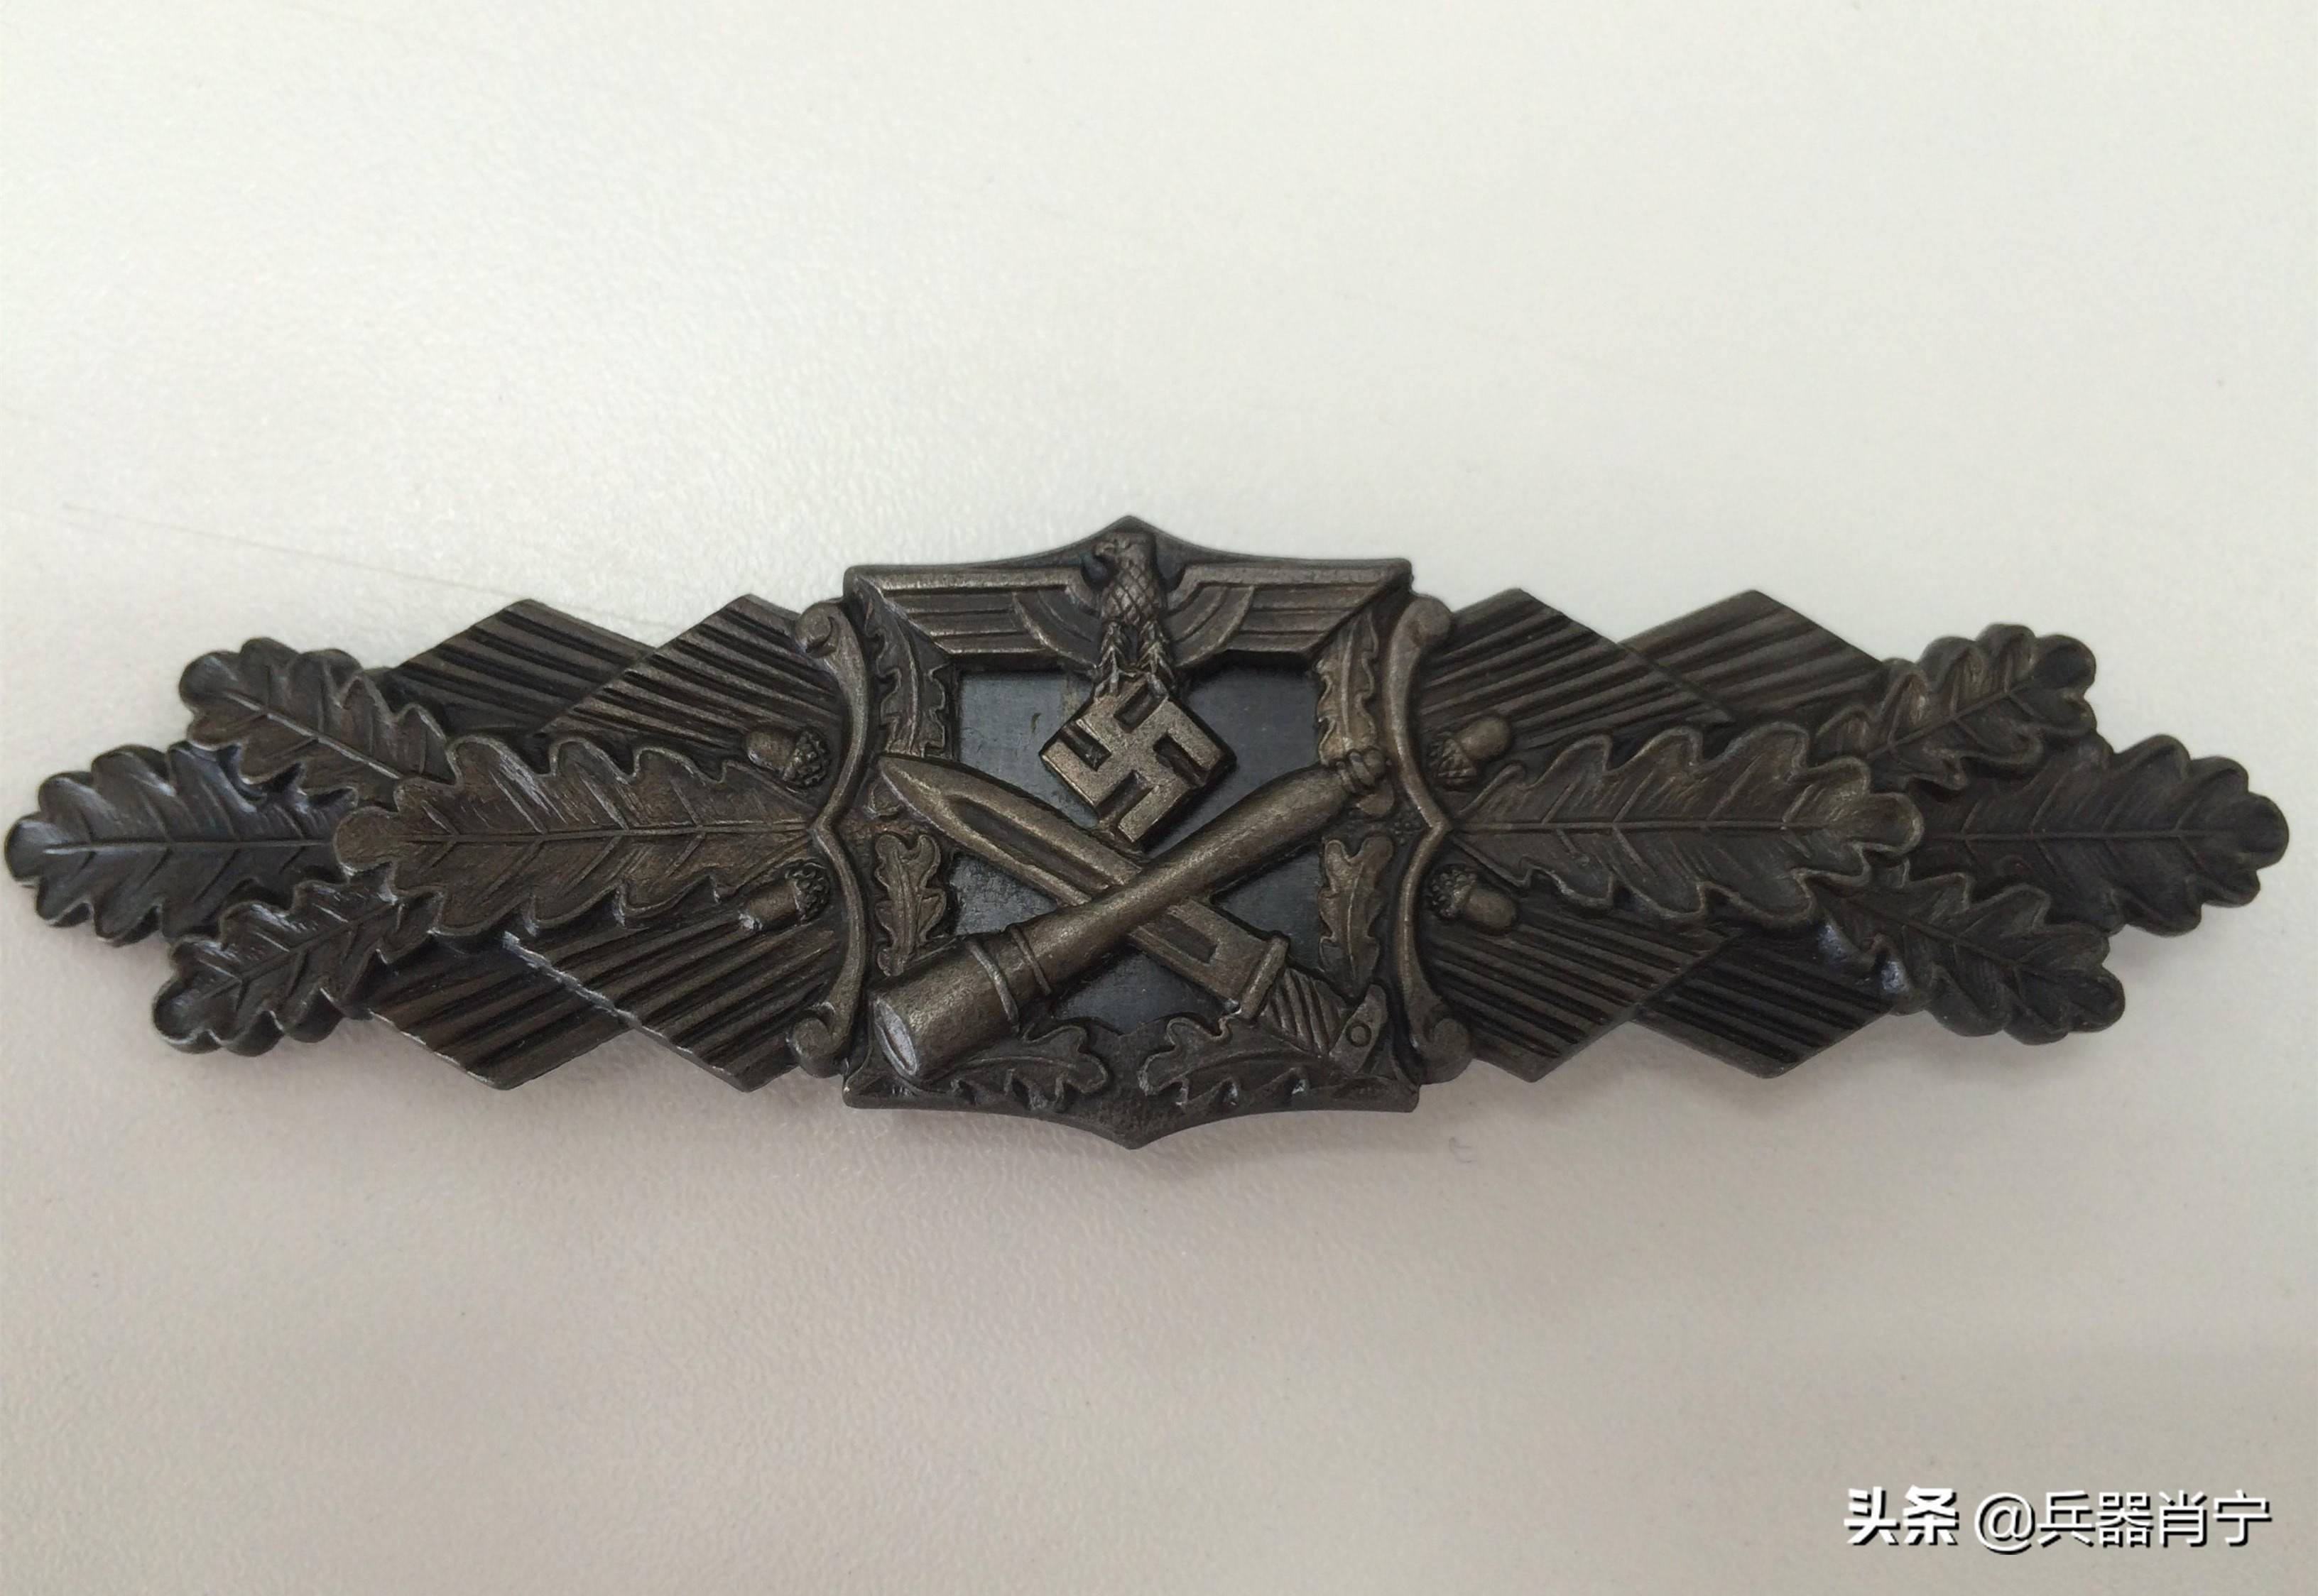 原创二战德国独特的近战勋章:获得标准极为苛刻,希特勒高度重视